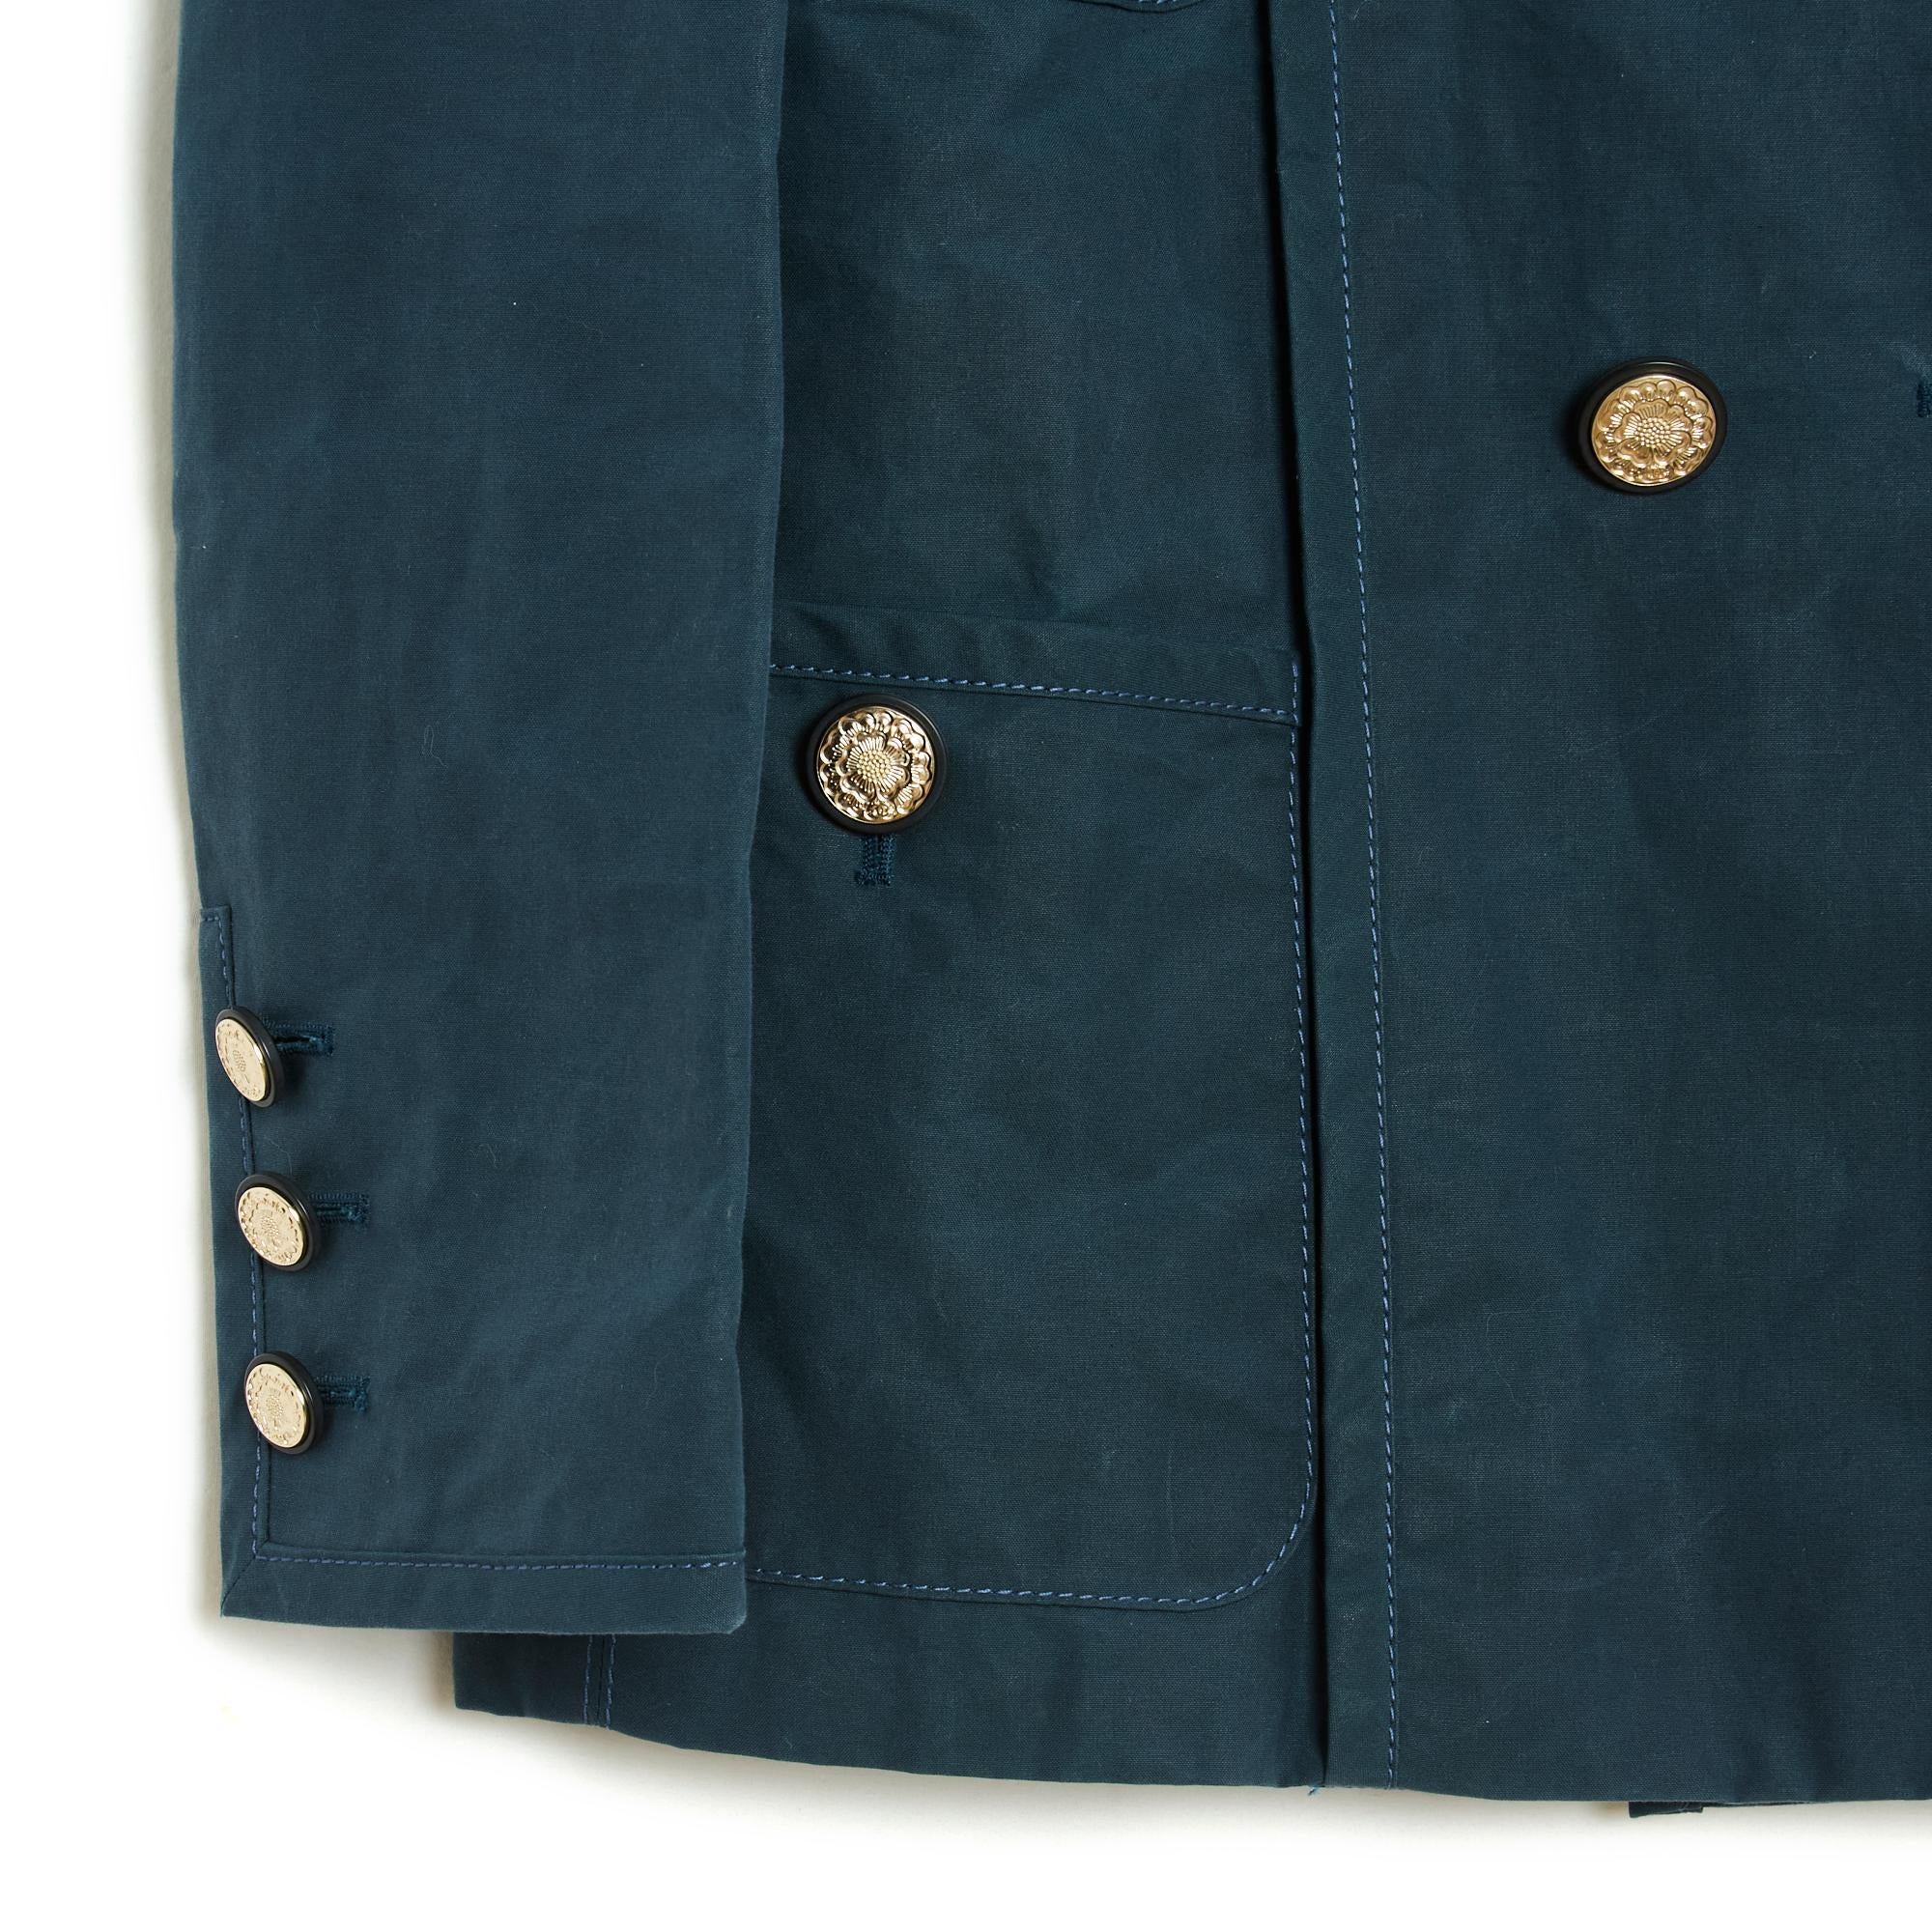 Chanel-Jacke aus der Cruise 2020-Kollektion aus dickem blauen Baumwoll-Canvas, zwischen einem Peacoat und einem Blazer, gerader Schnitt, breiter gekerbter Kragen, der mit doppelreihigen Knöpfen geschlossen wird, 4 geknöpfte aufgesetzte Taschen,